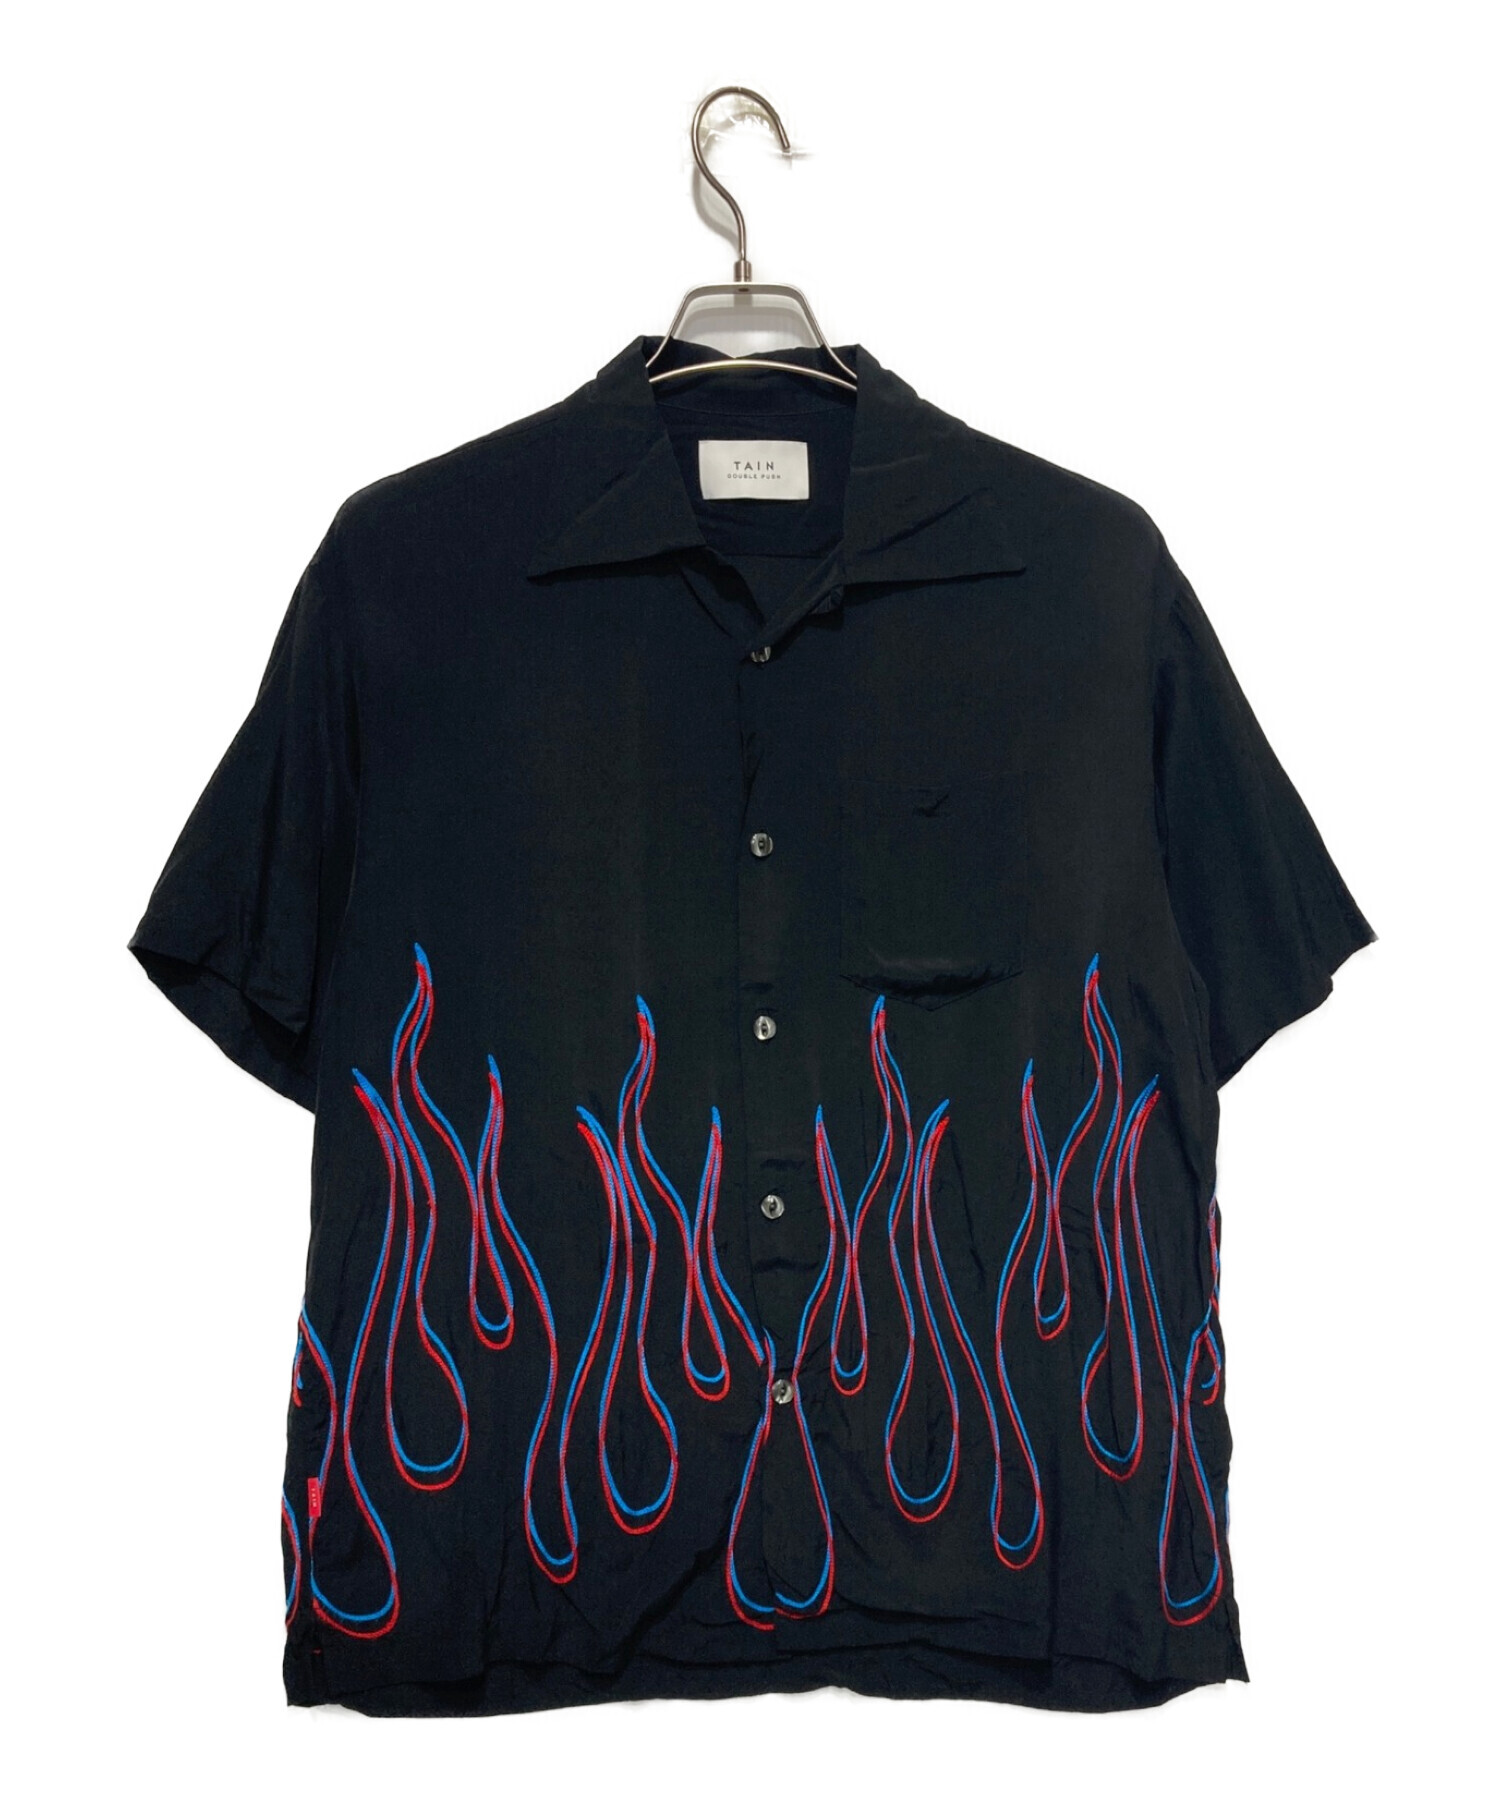 TAIN DOUBLE PUSH (タイン ダブルプッシュ) ファイヤー刺繍オープンカラーレーヨンシャツ ブラック サイズ:M